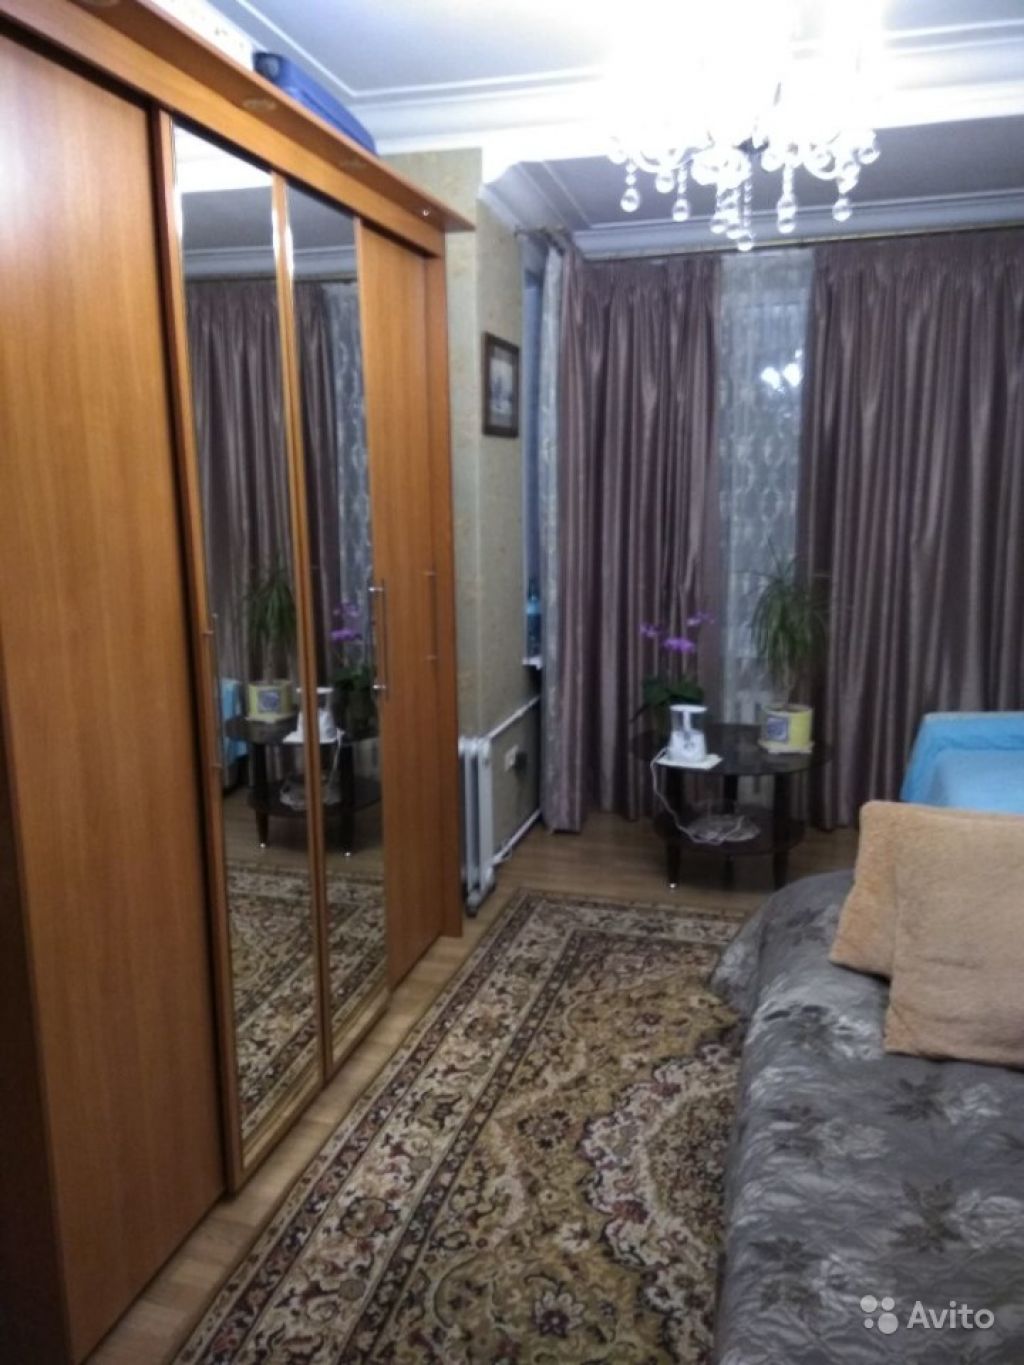 Продам комнату Комната 19.6 м² в 3-к квартире на 3 этаже 5-этажного кирпичного дома в Москве. Фото 1